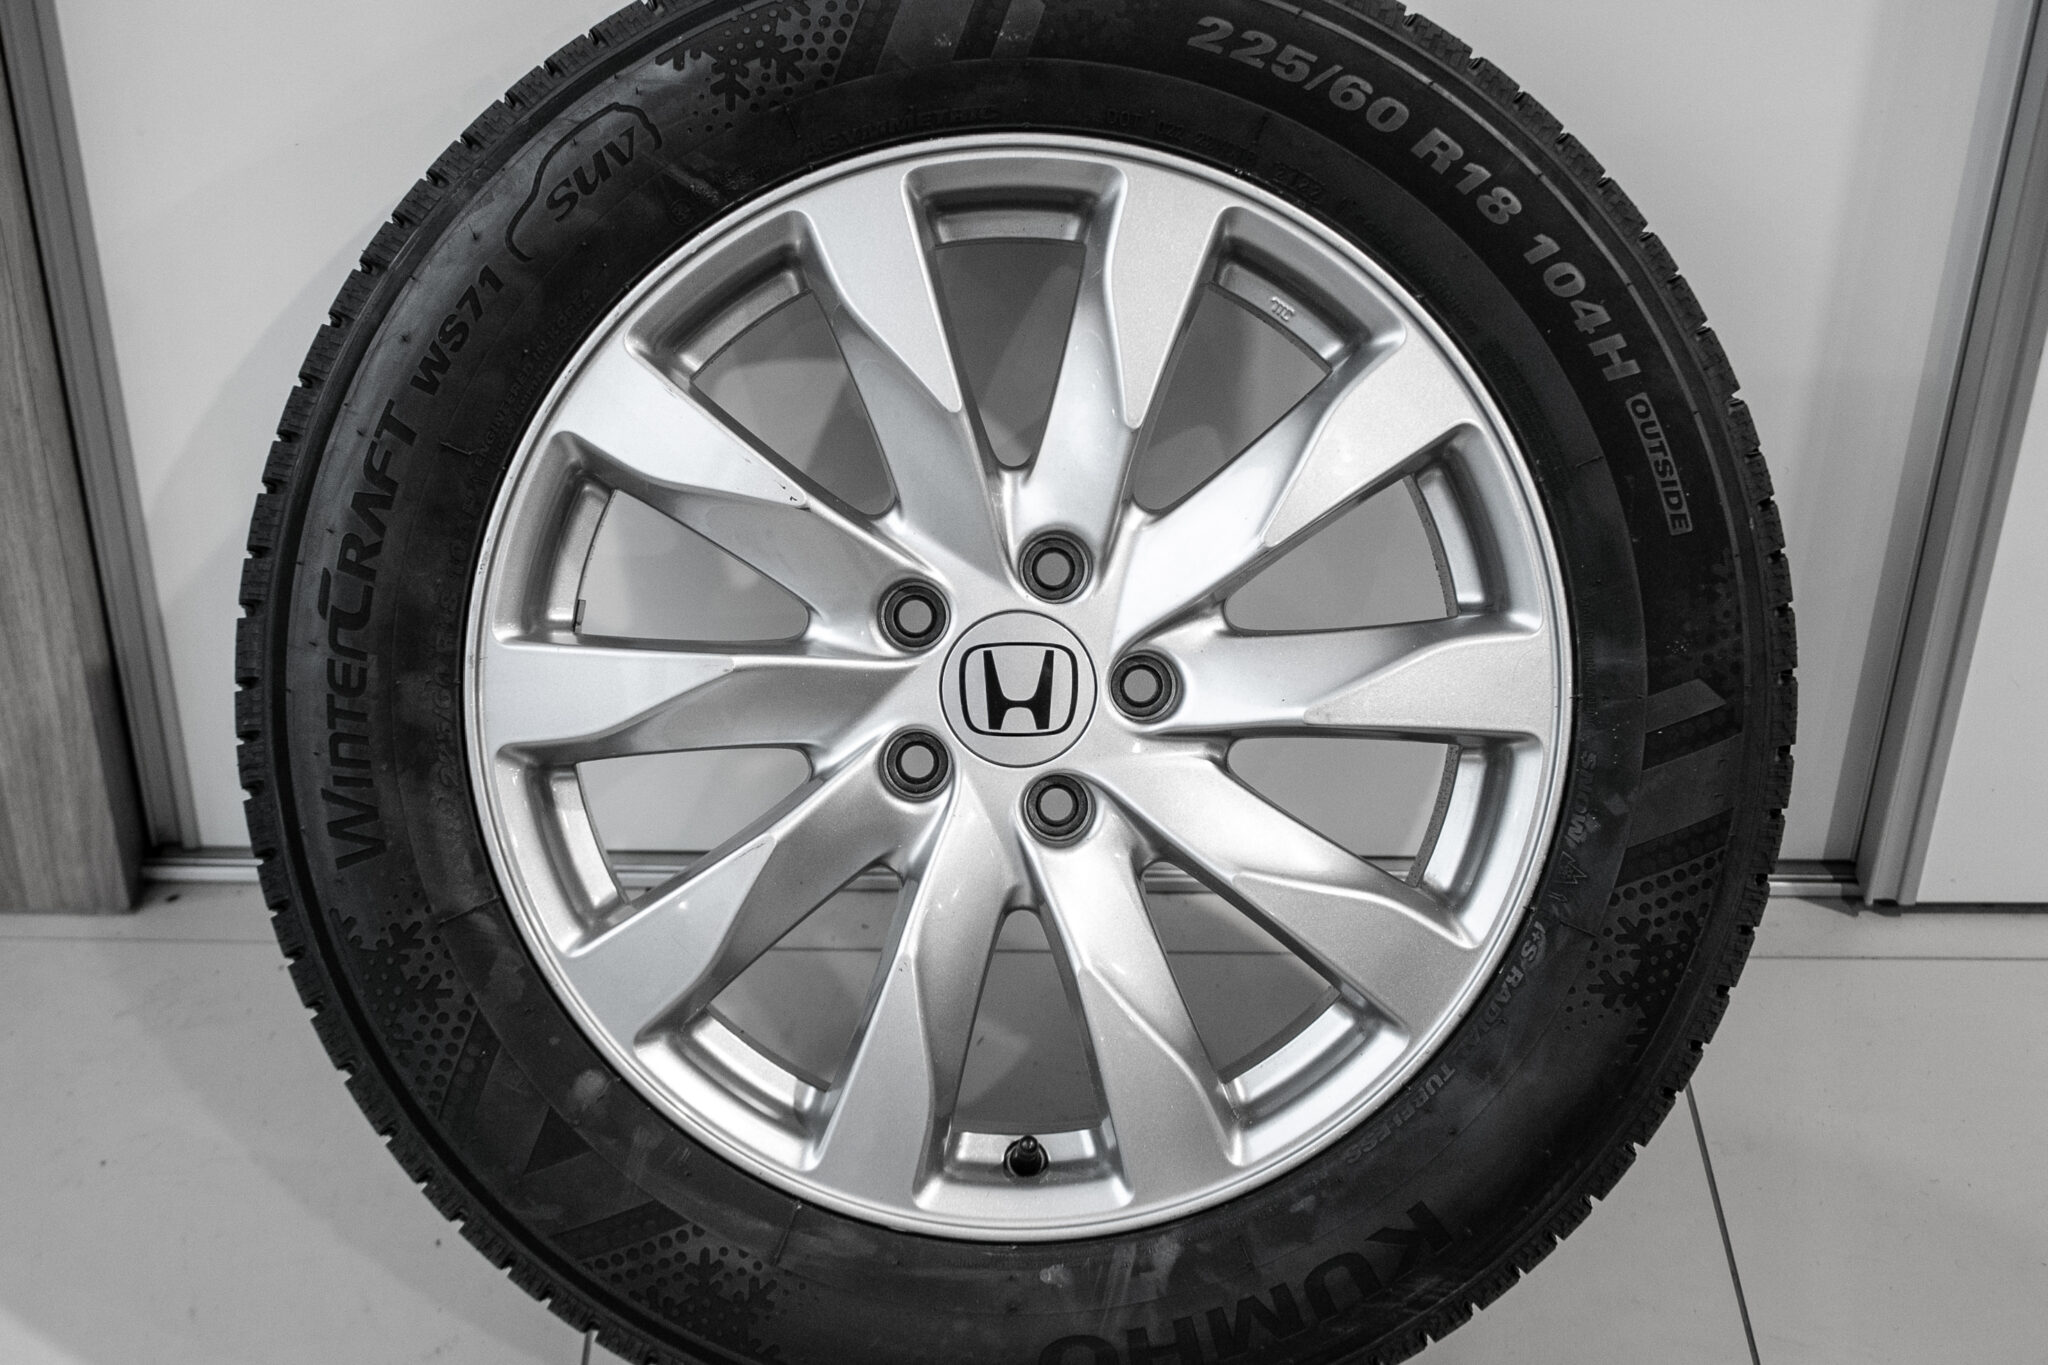 18" Winterwielen voor de Honda CR-V 07-17
€695,-
gebruikt. Profieldiepte: 2x nieuw -  7.8mm